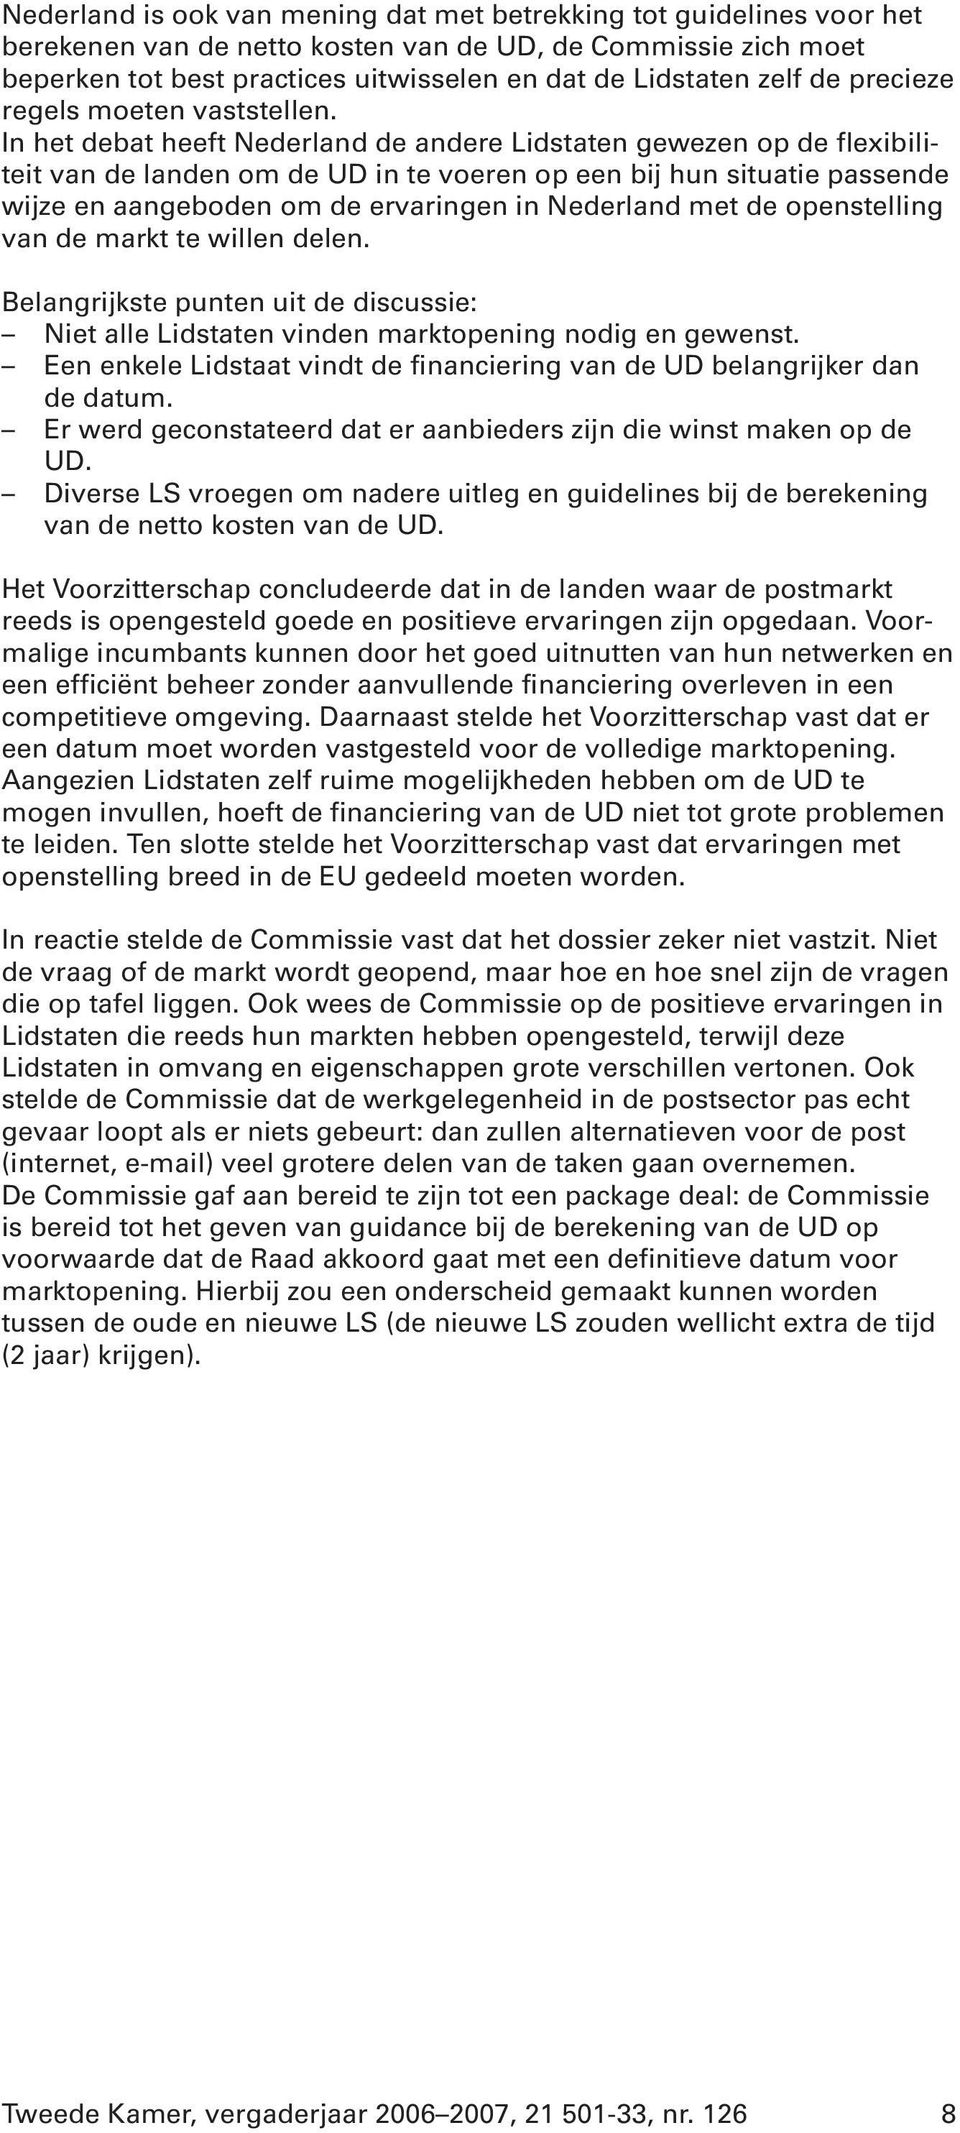 In het debat heeft Nederland de andere Lidstaten gewezen op de flexibiliteit van de landen om de UD in te voeren op een bij hun situatie passende wijze en aangeboden om de ervaringen in Nederland met